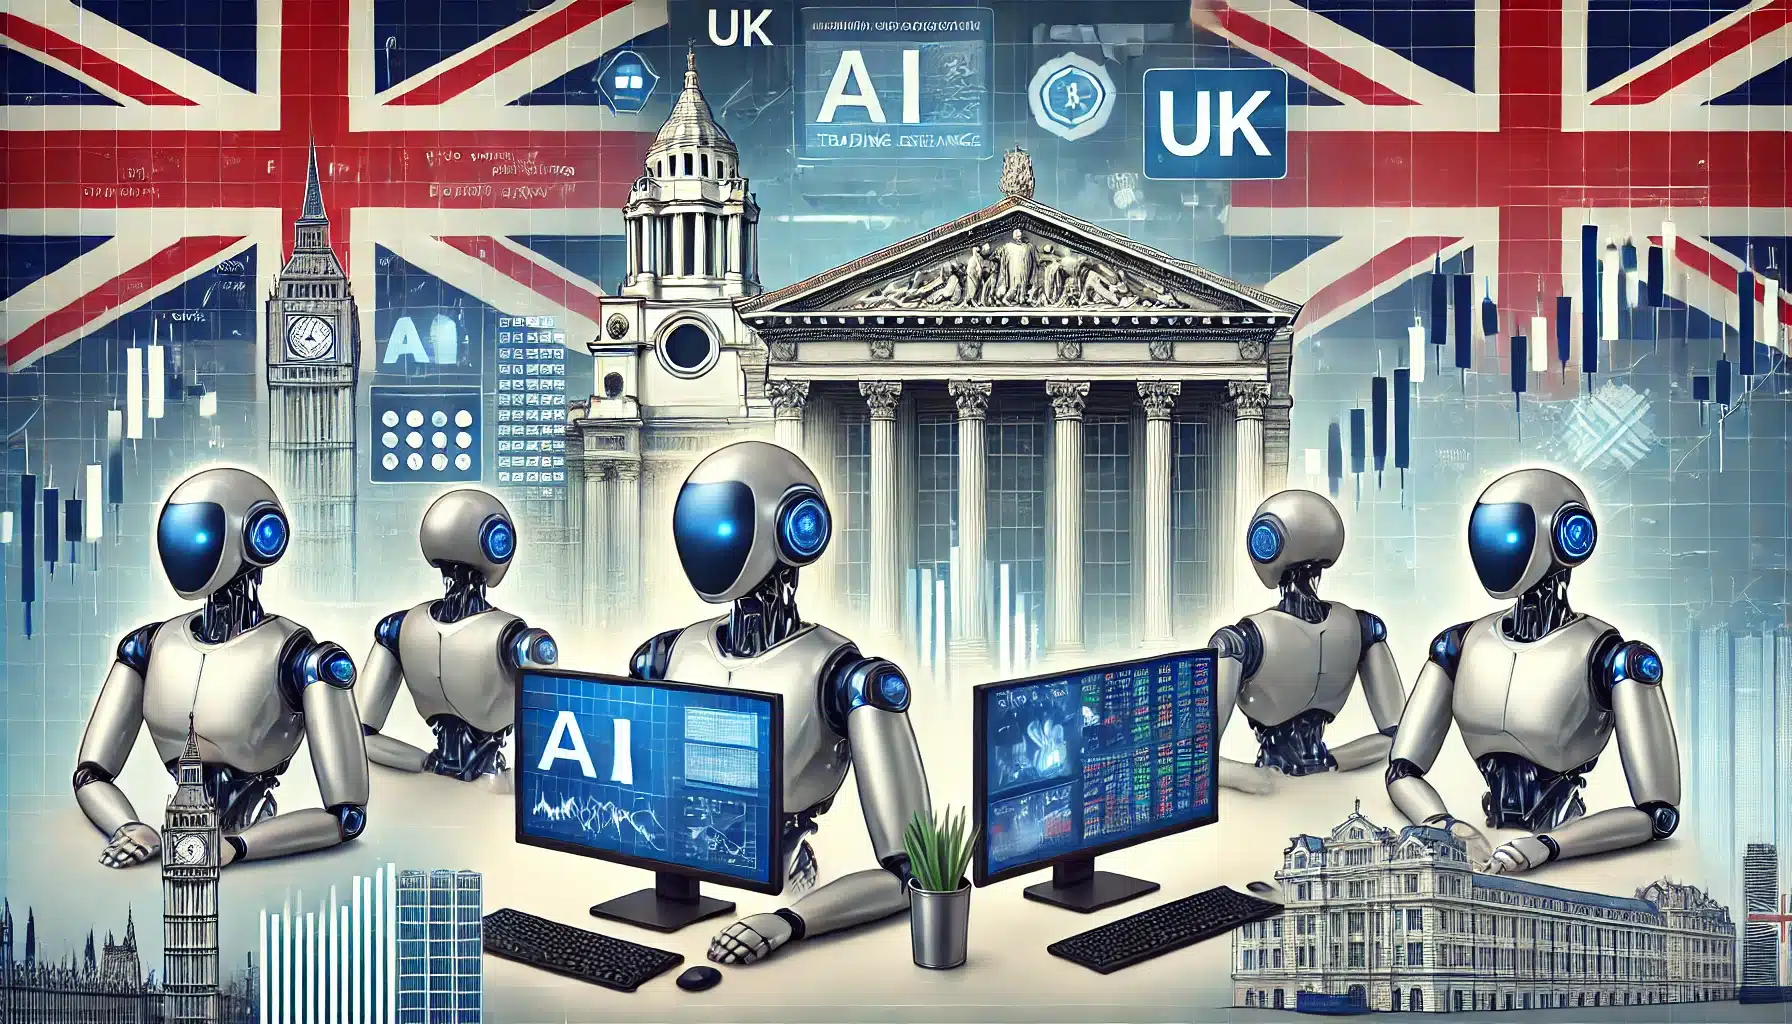 image illustrating AI trading bots for UK use.